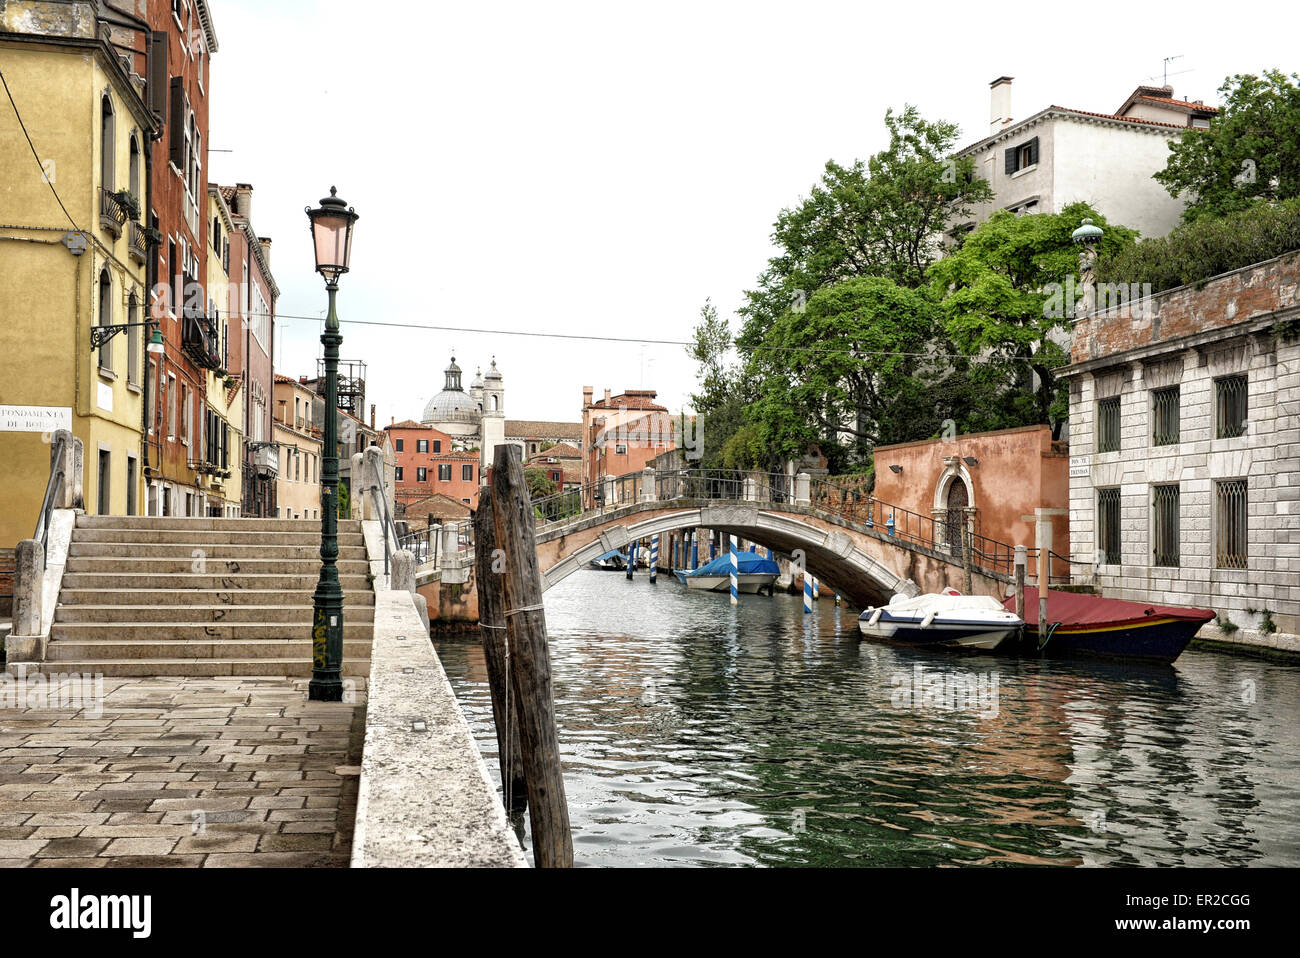 Scène italienne idyllique avec pied Pont sur canal bordé de bâtiments bas, Venise, Italie Banque D'Images